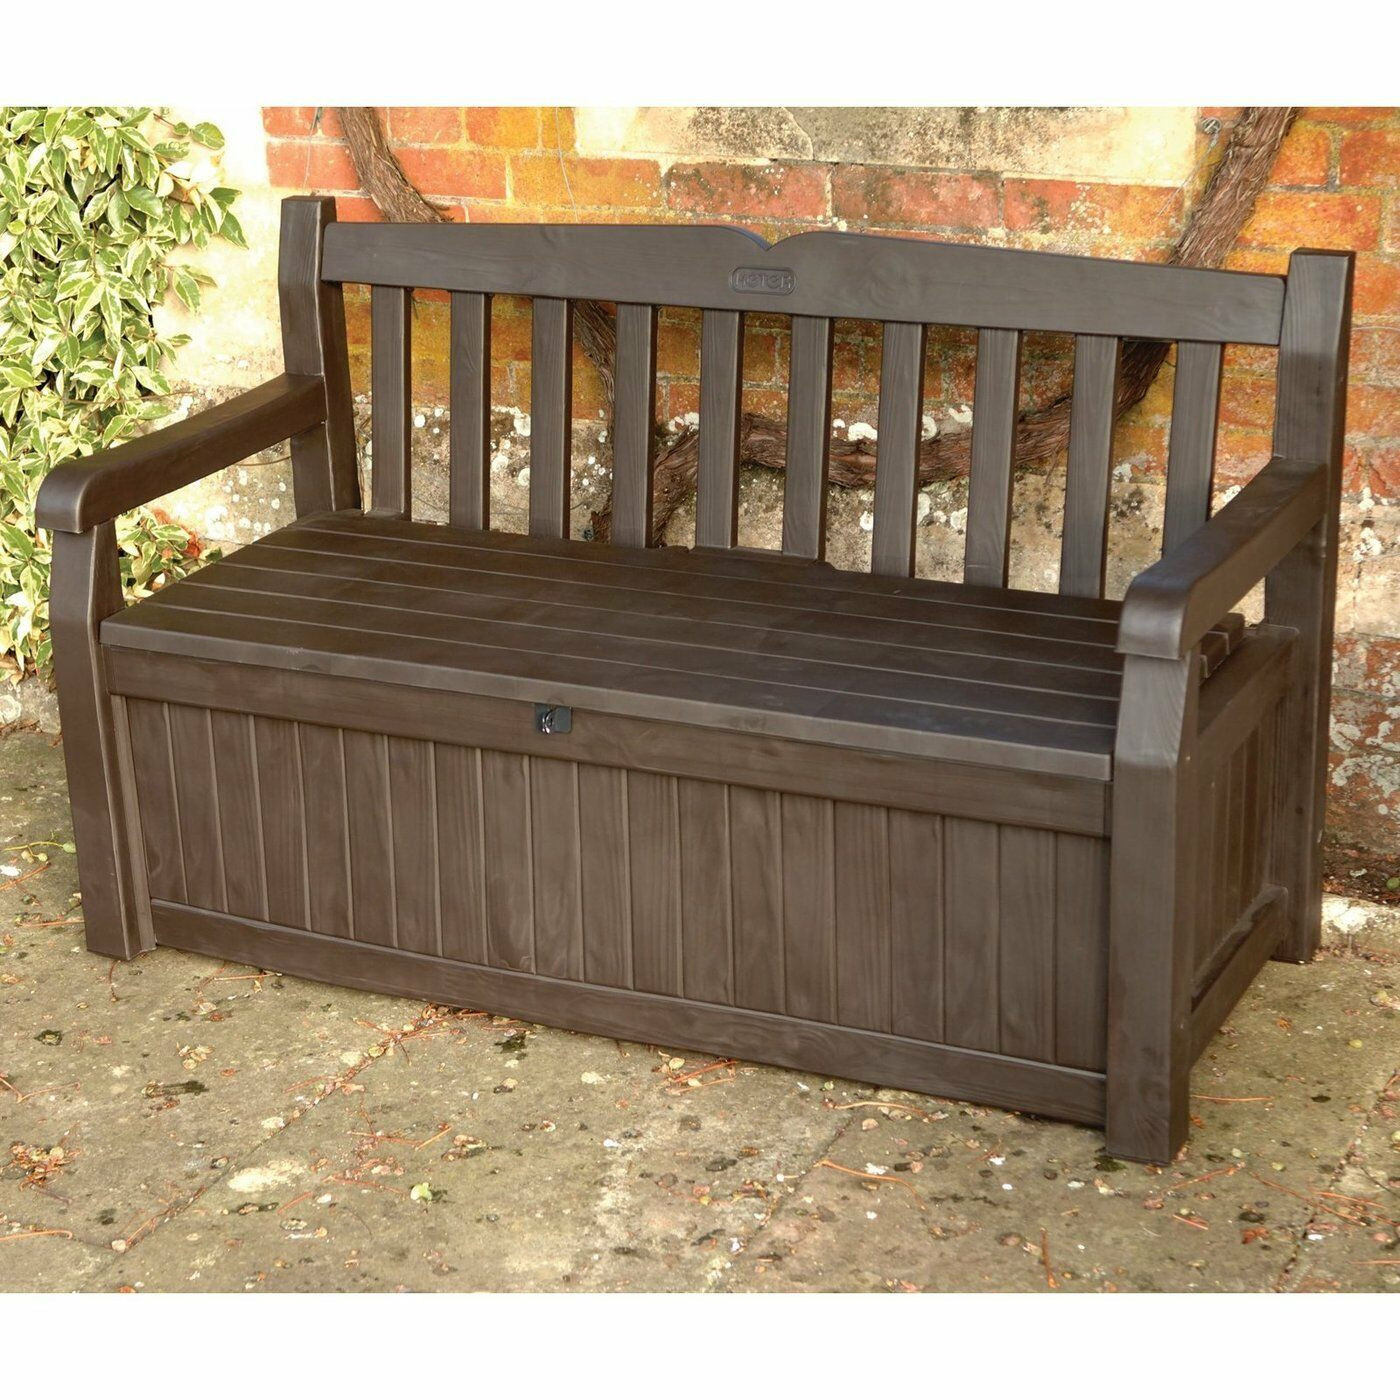 Storage Bench For Deck
 Outdoor Storage Bench Box Patio Deck Brown Pool Garden